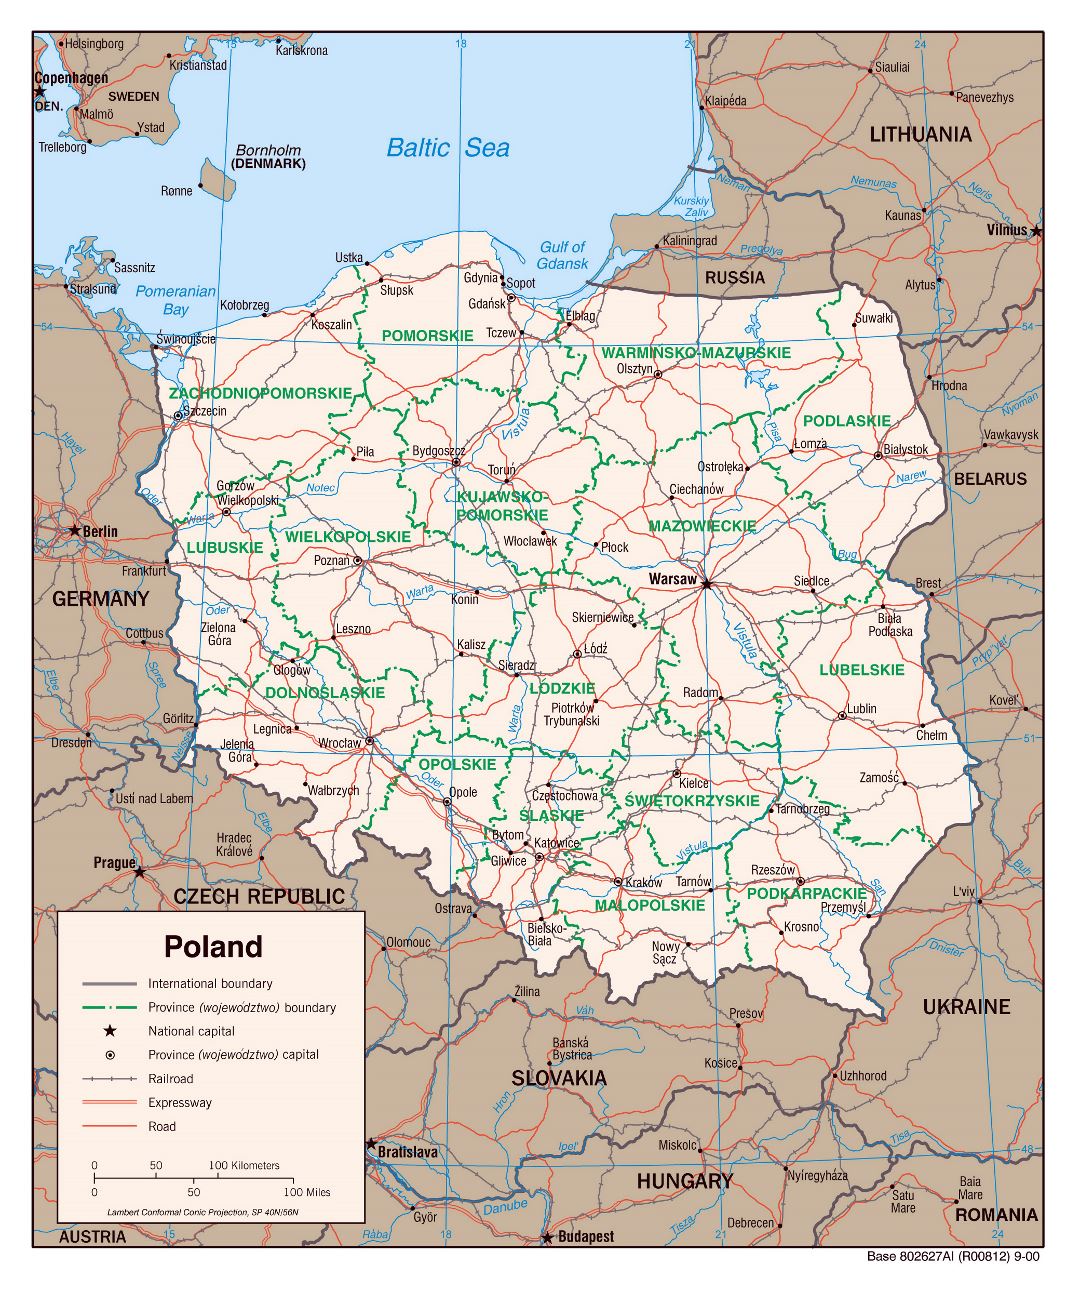 Grande detallado mapa política y administrativa de Polonia con carreteras, ferrocarriles y principales ciudades - 2000